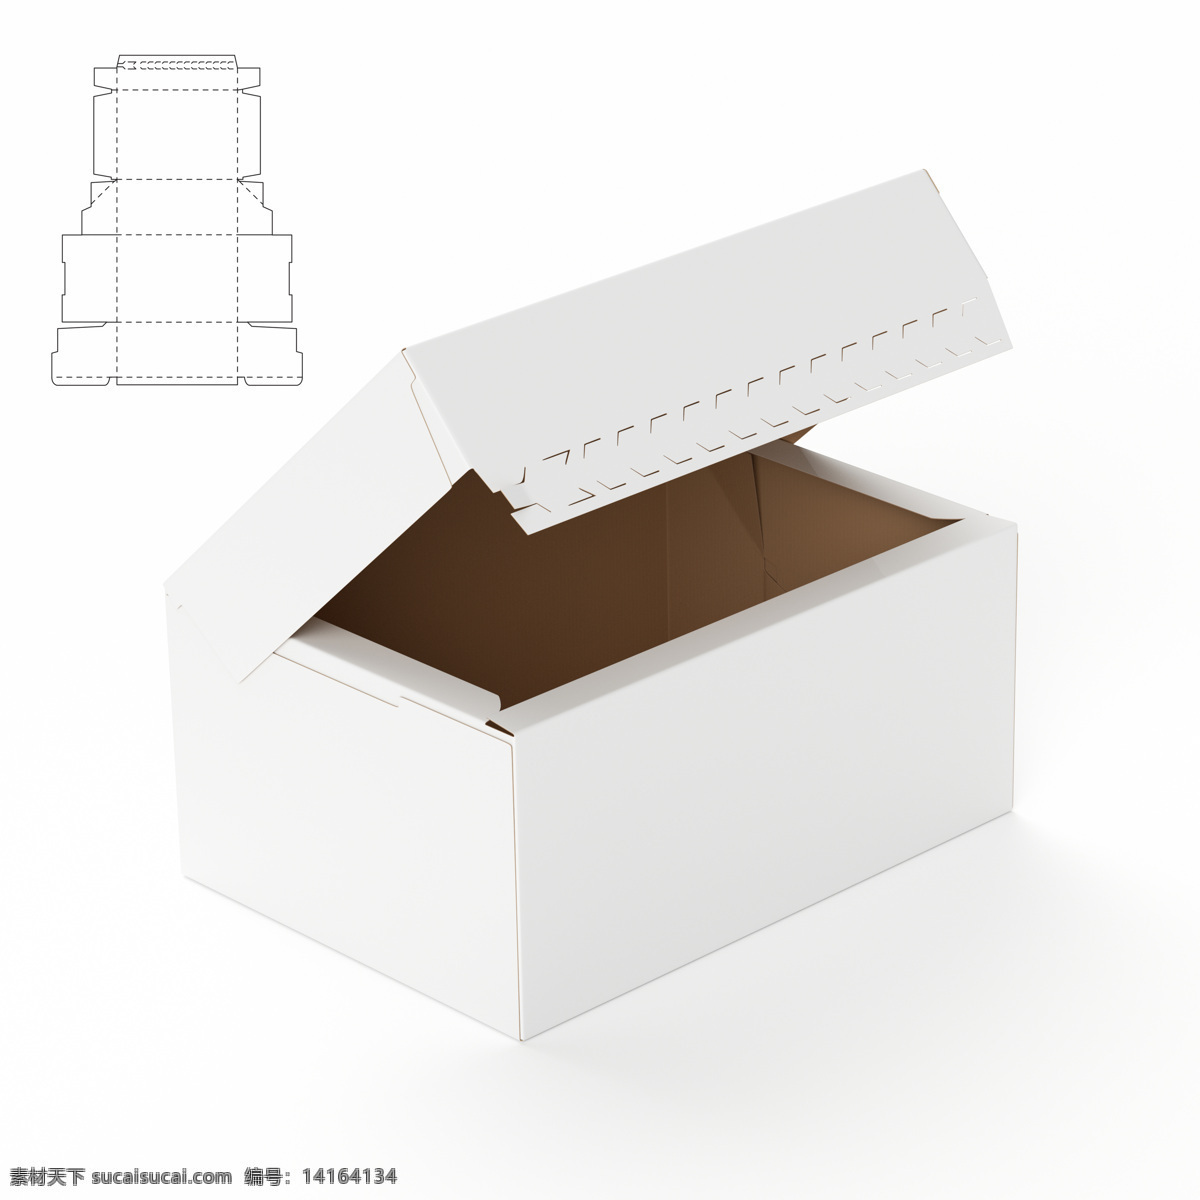 空白 包装盒 模板 纸盒设计 包装盒设计 包装盒展开图 包装平面图 钢刀线 包装设计 包装效果图 空白包装盒 盒子 产品包装盒 其他类别 生活百科 白色